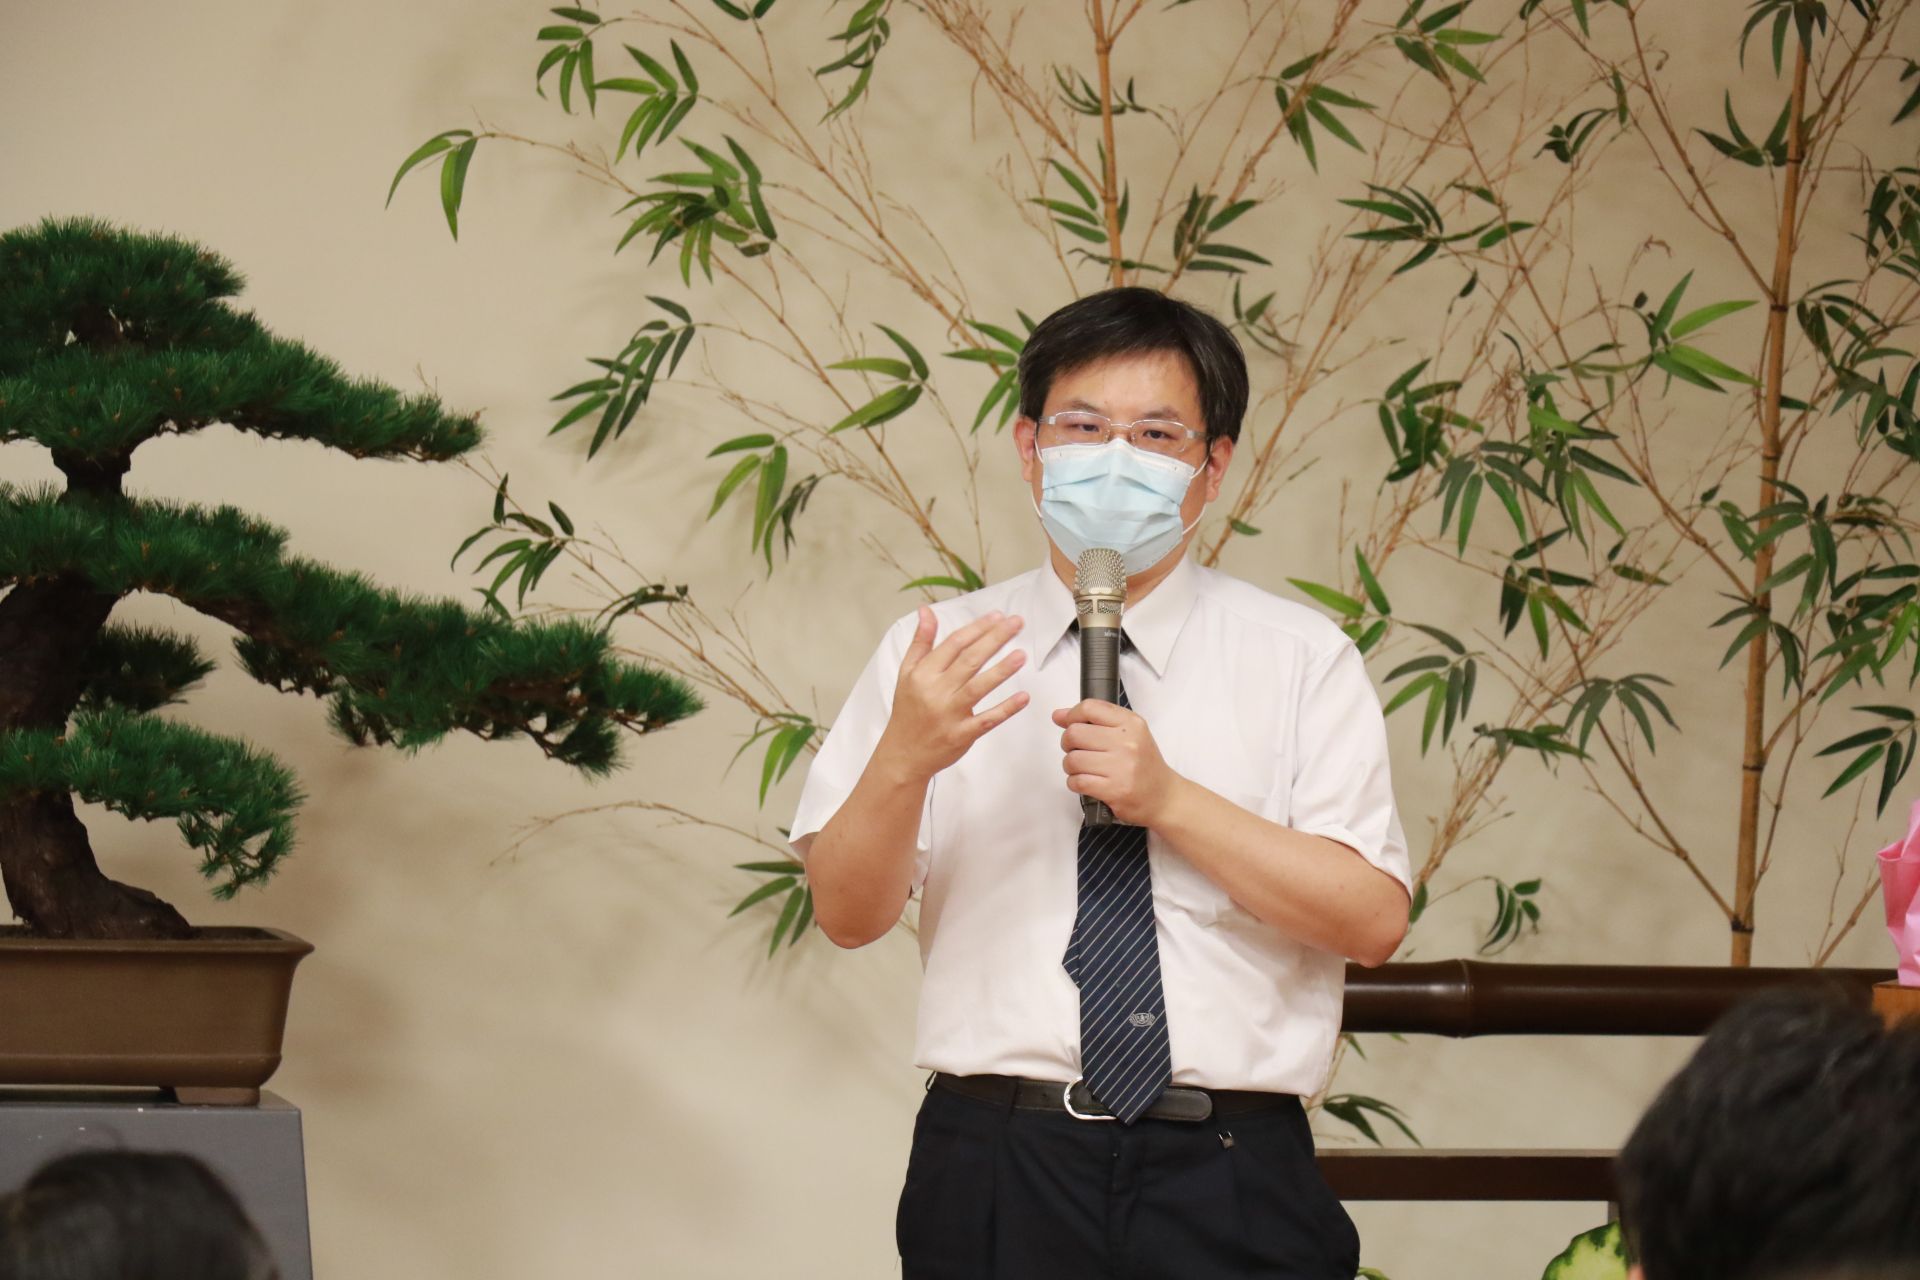 臺中慈濟醫院一般外科主任余政展解說胃癌治療新知。